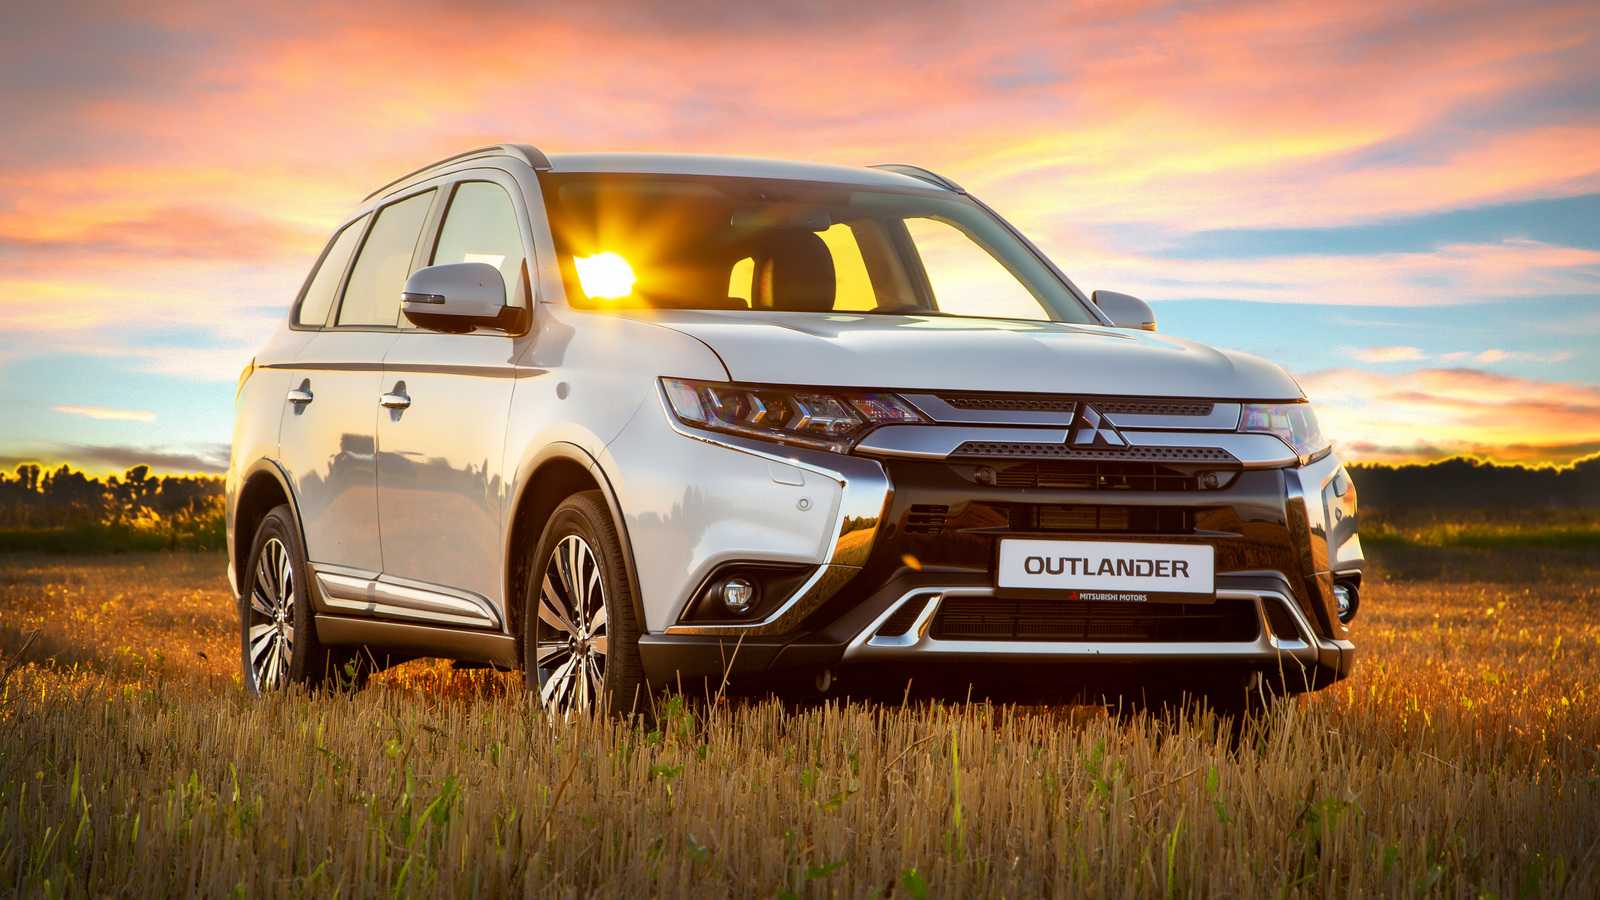 Mitsubishi outlander 2020 новый кузов, цены, комплектации, фото, видео тест-драйв